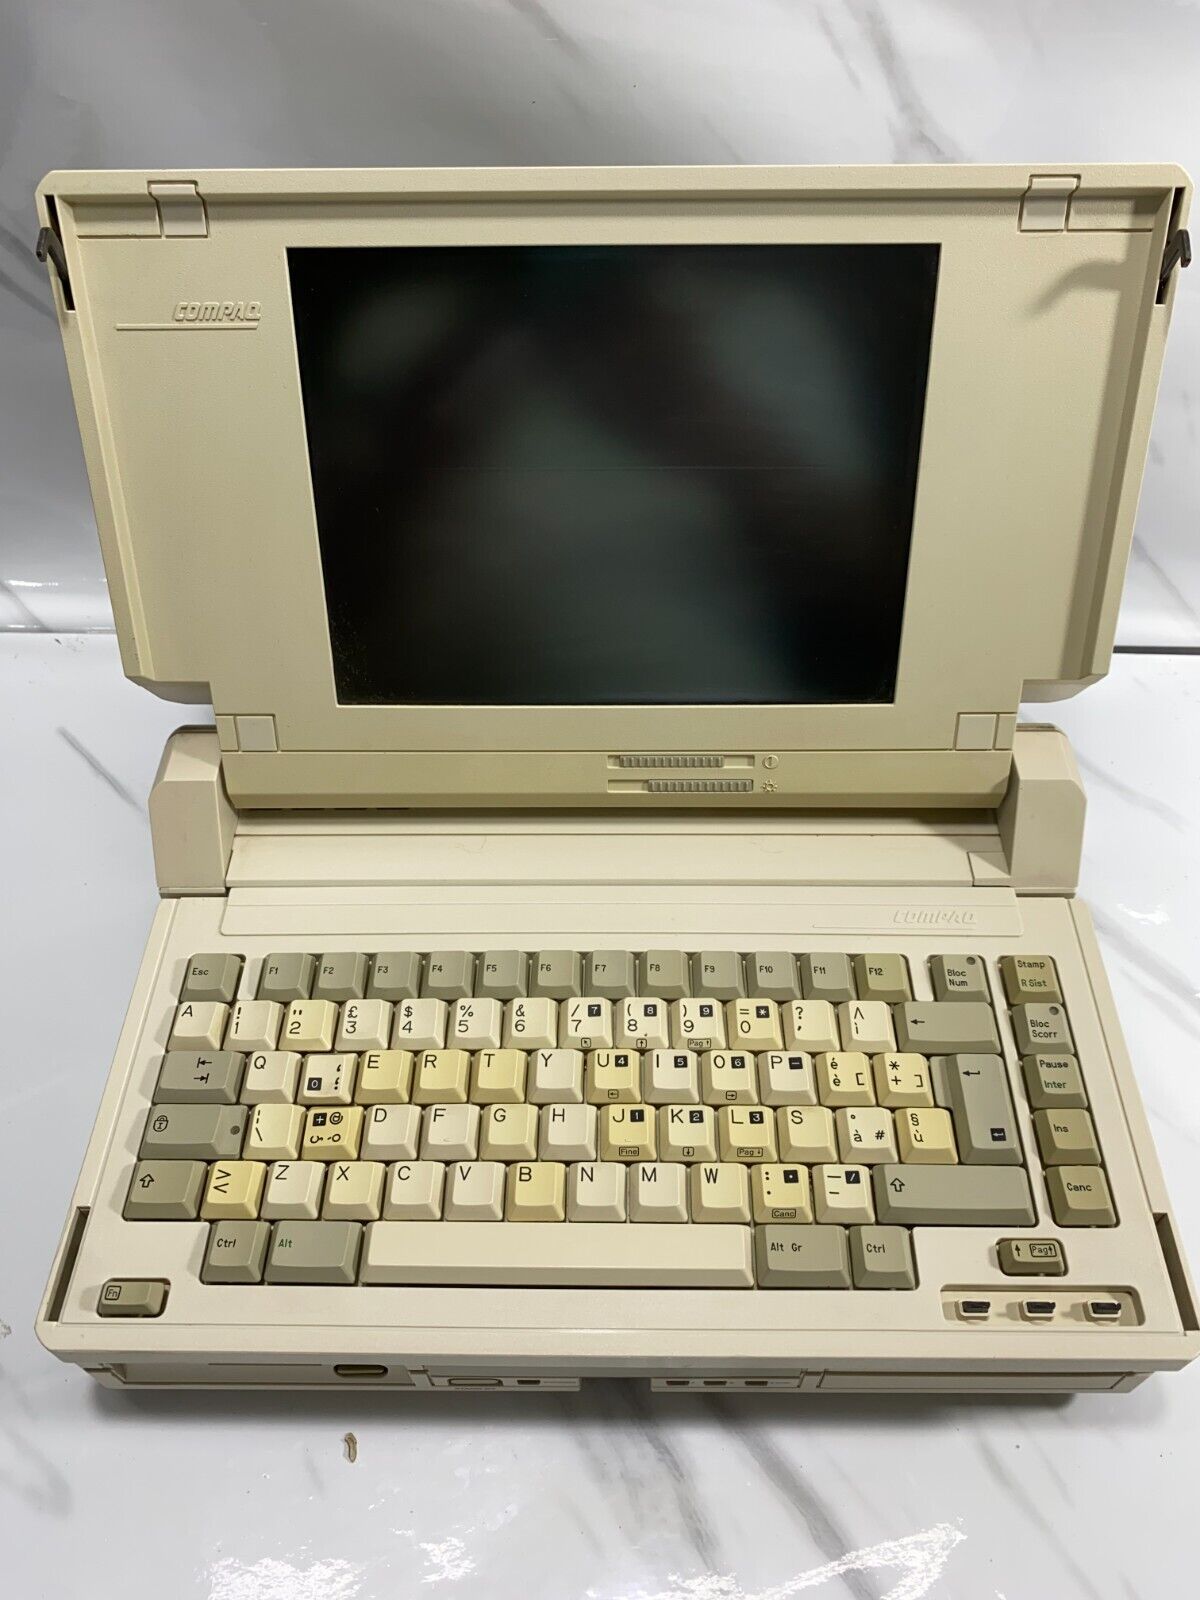 Vintage Compaq SLT/286 Computer Model 2680 1988 Laptop w removable keyboard